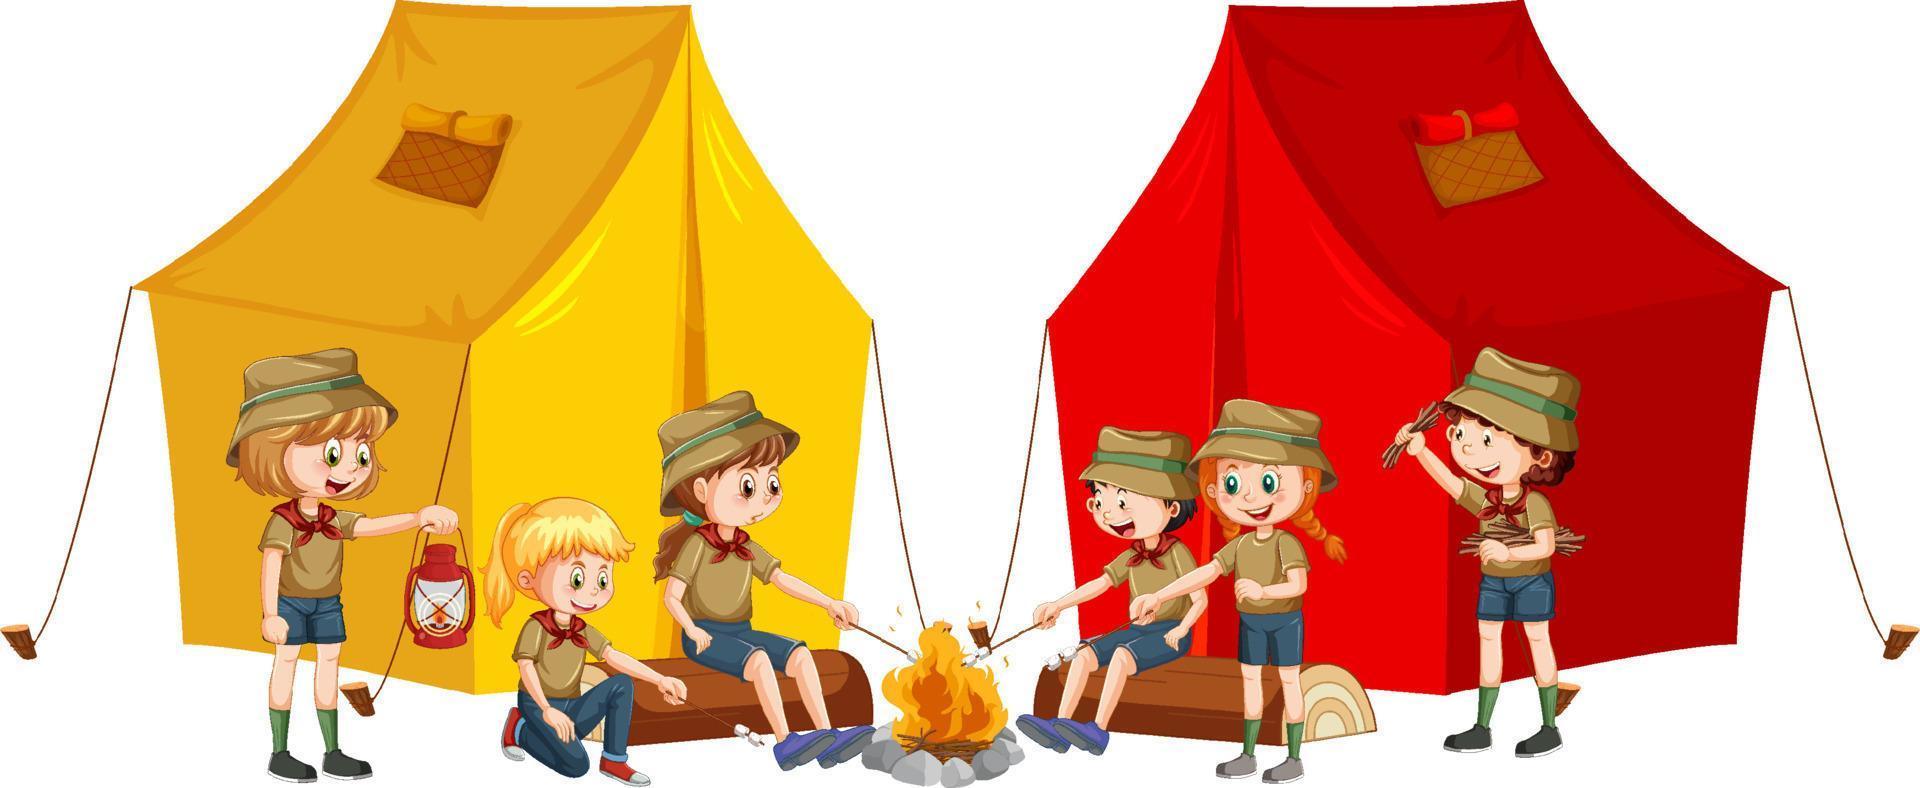 verkenner kinderen met camping tent vector